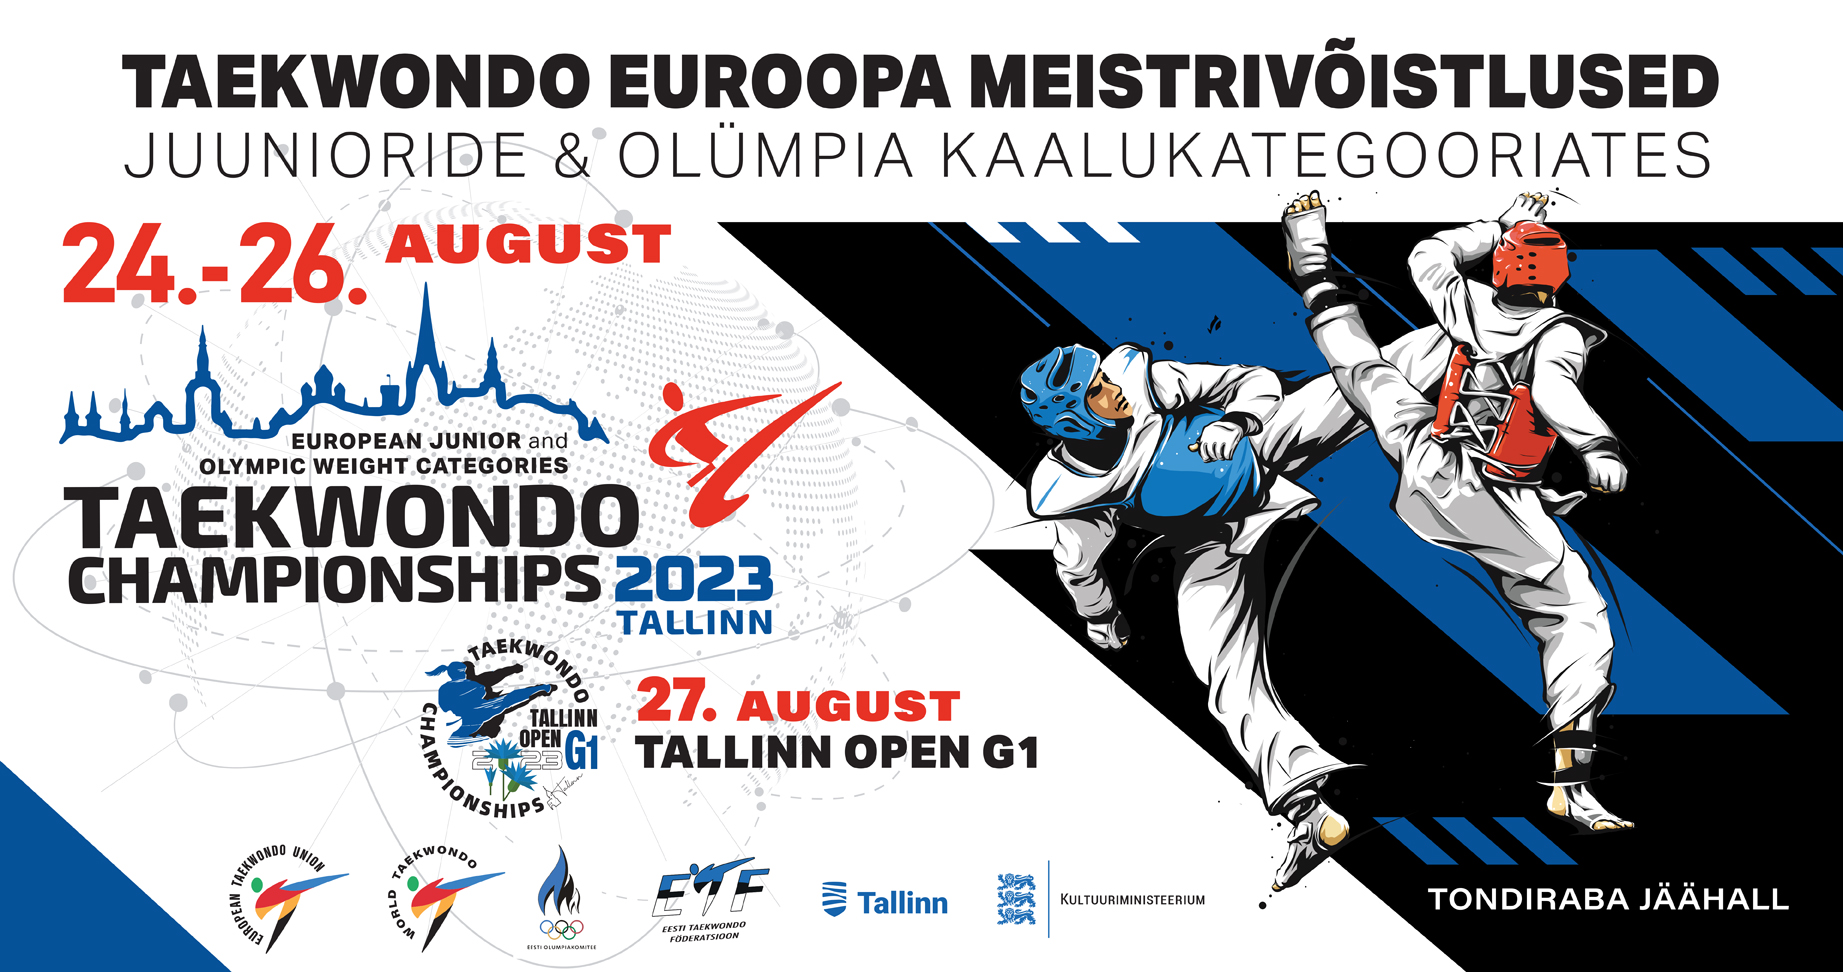 Tallinnas toimuvad Euroopa Meistrivõistlused Taekwondos, seekord juunioride seas ja olümpia kaalukategooriates täiskasvanutele ning samuti Tallinn Open G1, mis